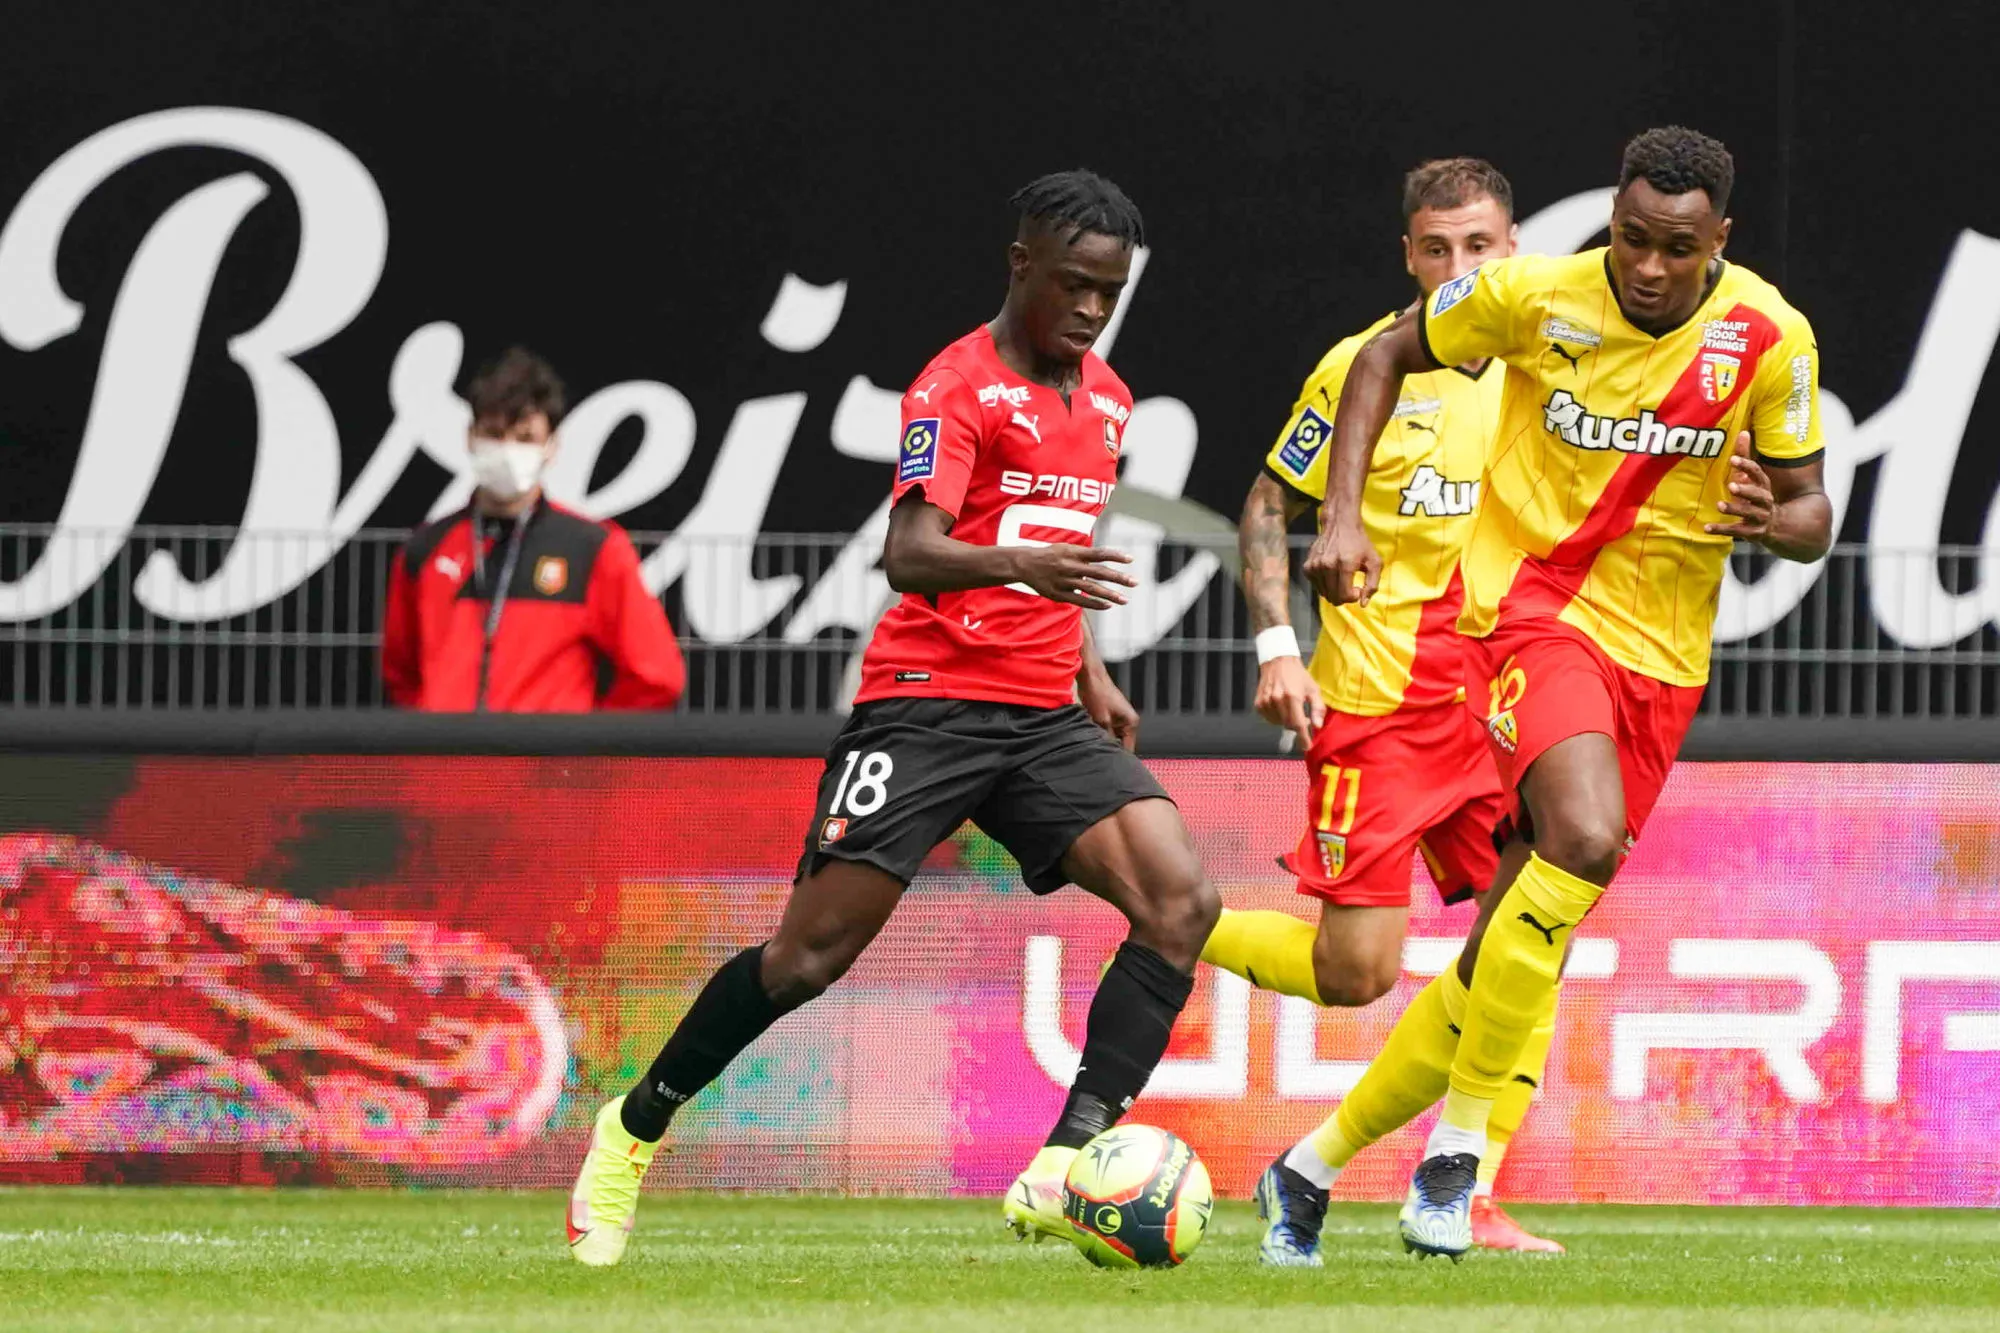 Pronostic Rennes Nantes : Analyse cote et prono du match de Ligue 1